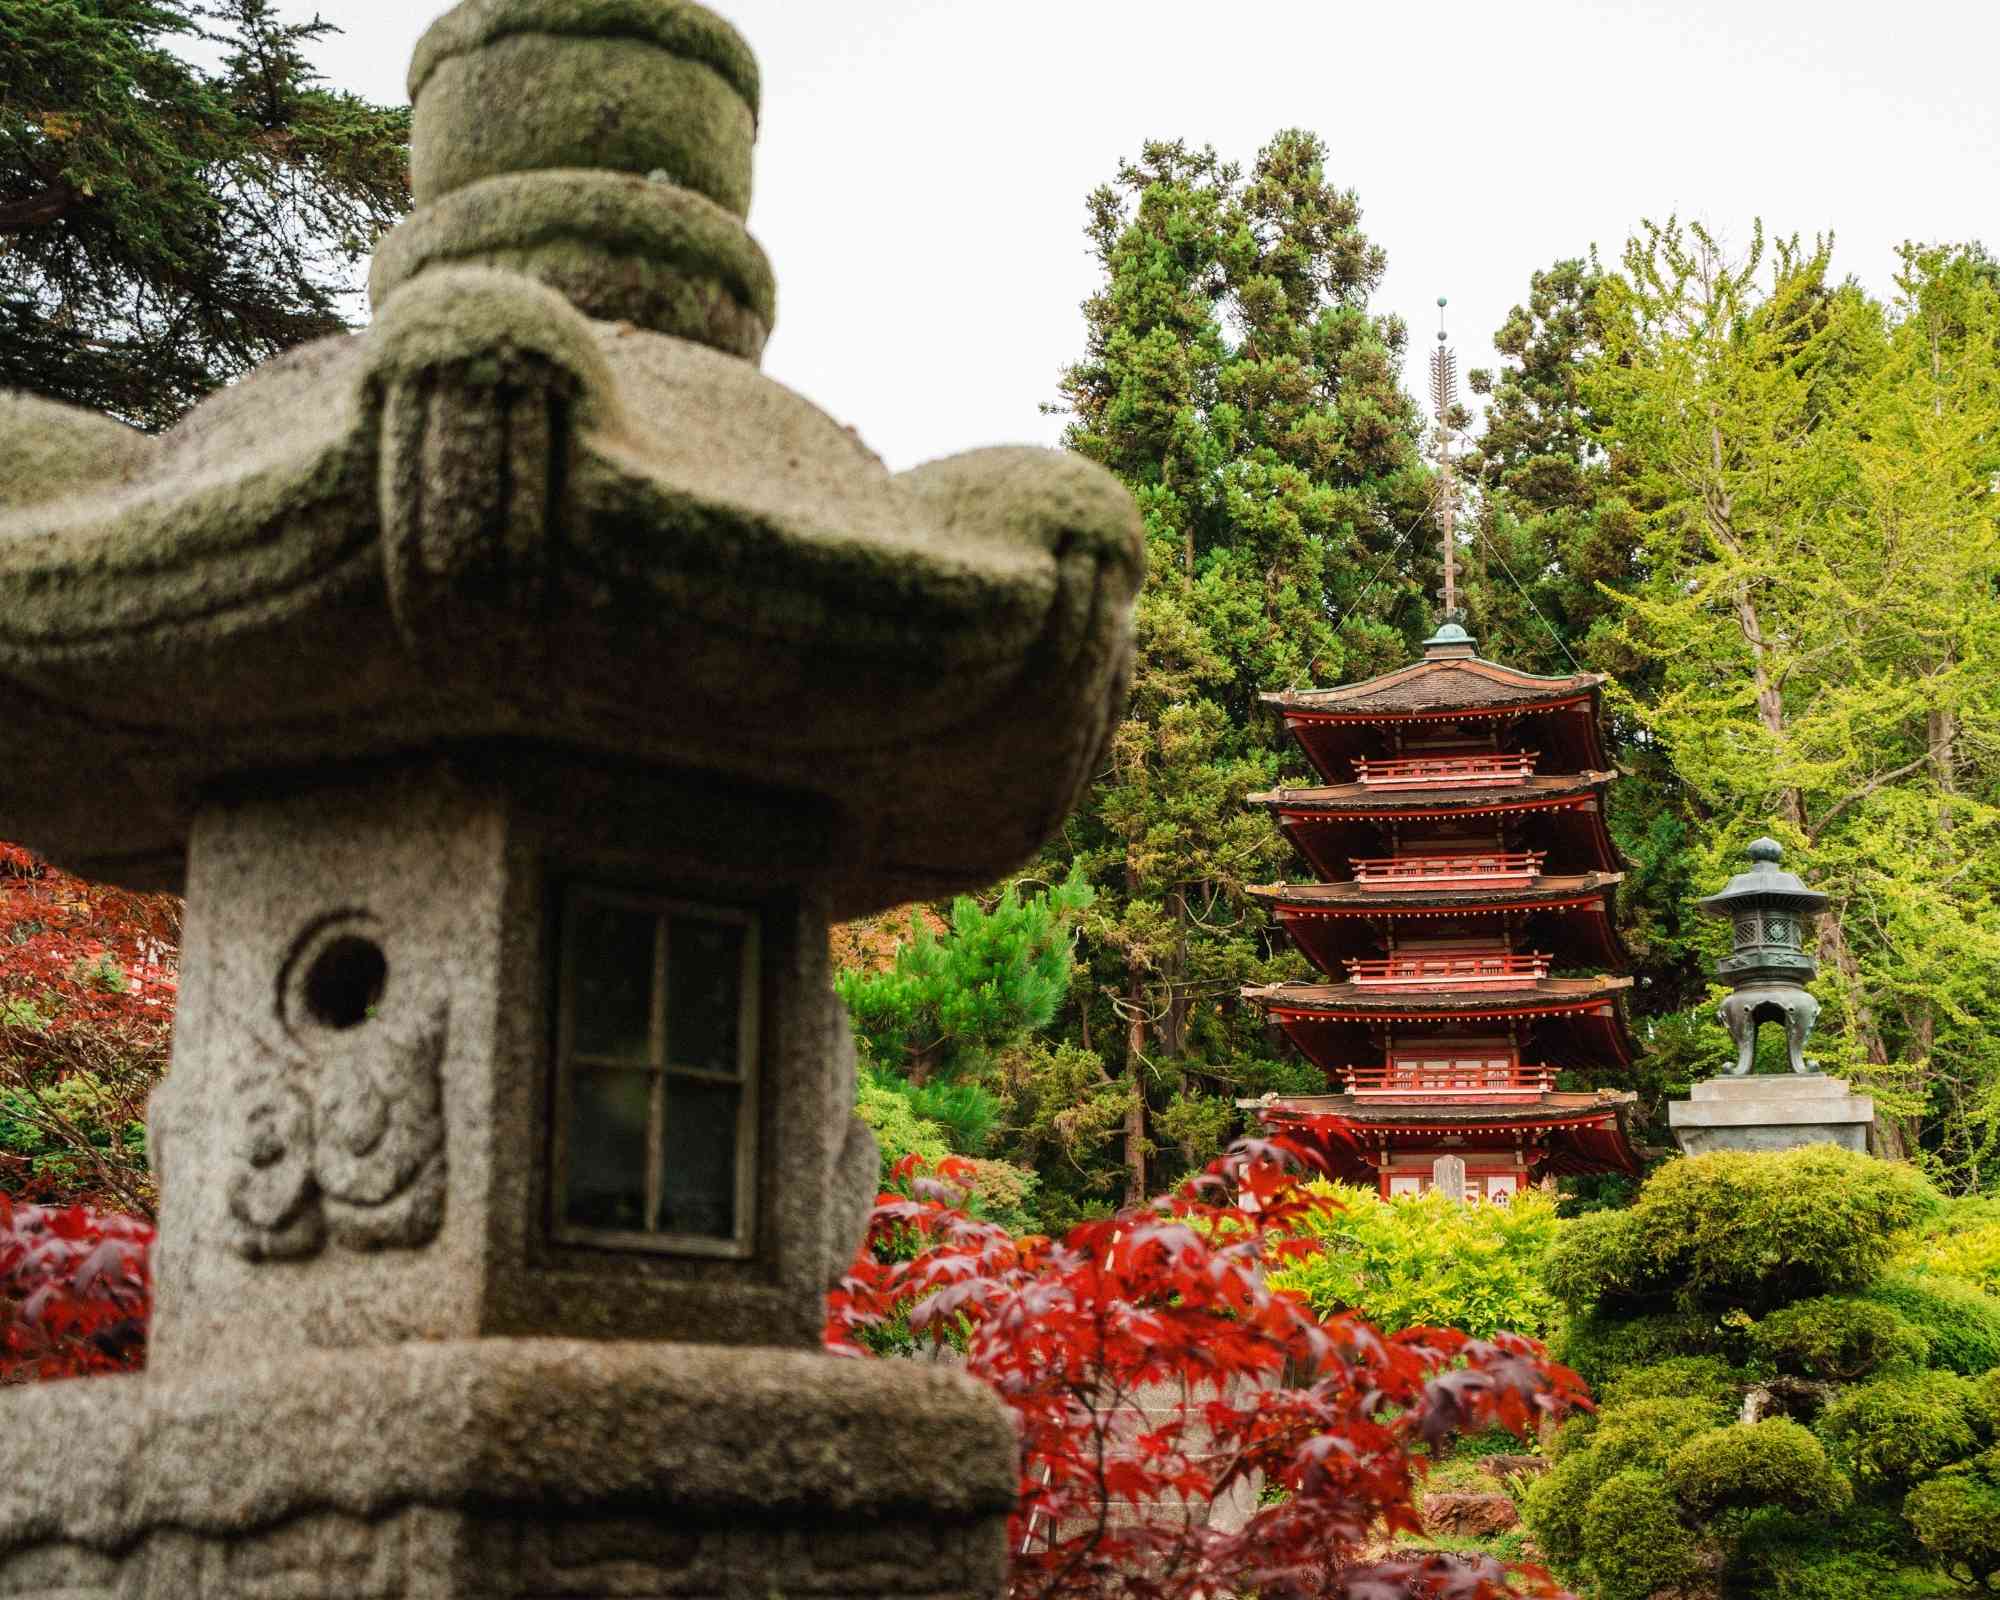 Guide du jardin japonais : éléments, styles, symbolique